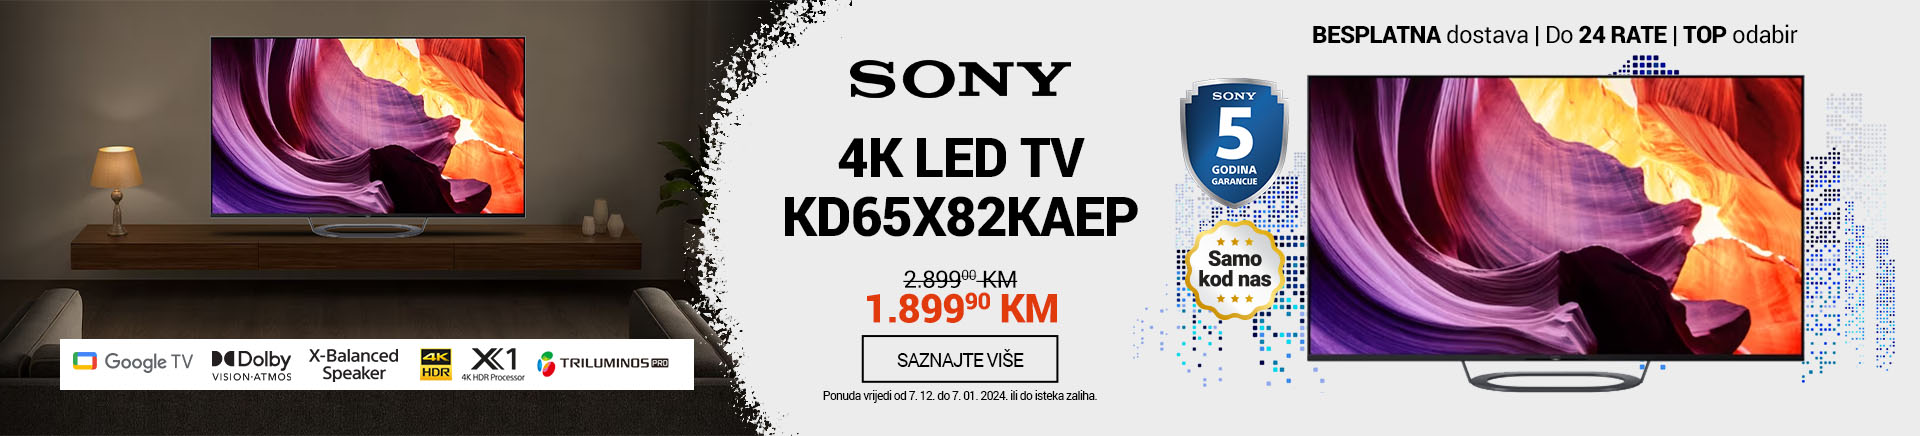 BA SONY 4K LED TV KD65X80LAEP Realisticne Boje MOBILE 380 X 436.jpg